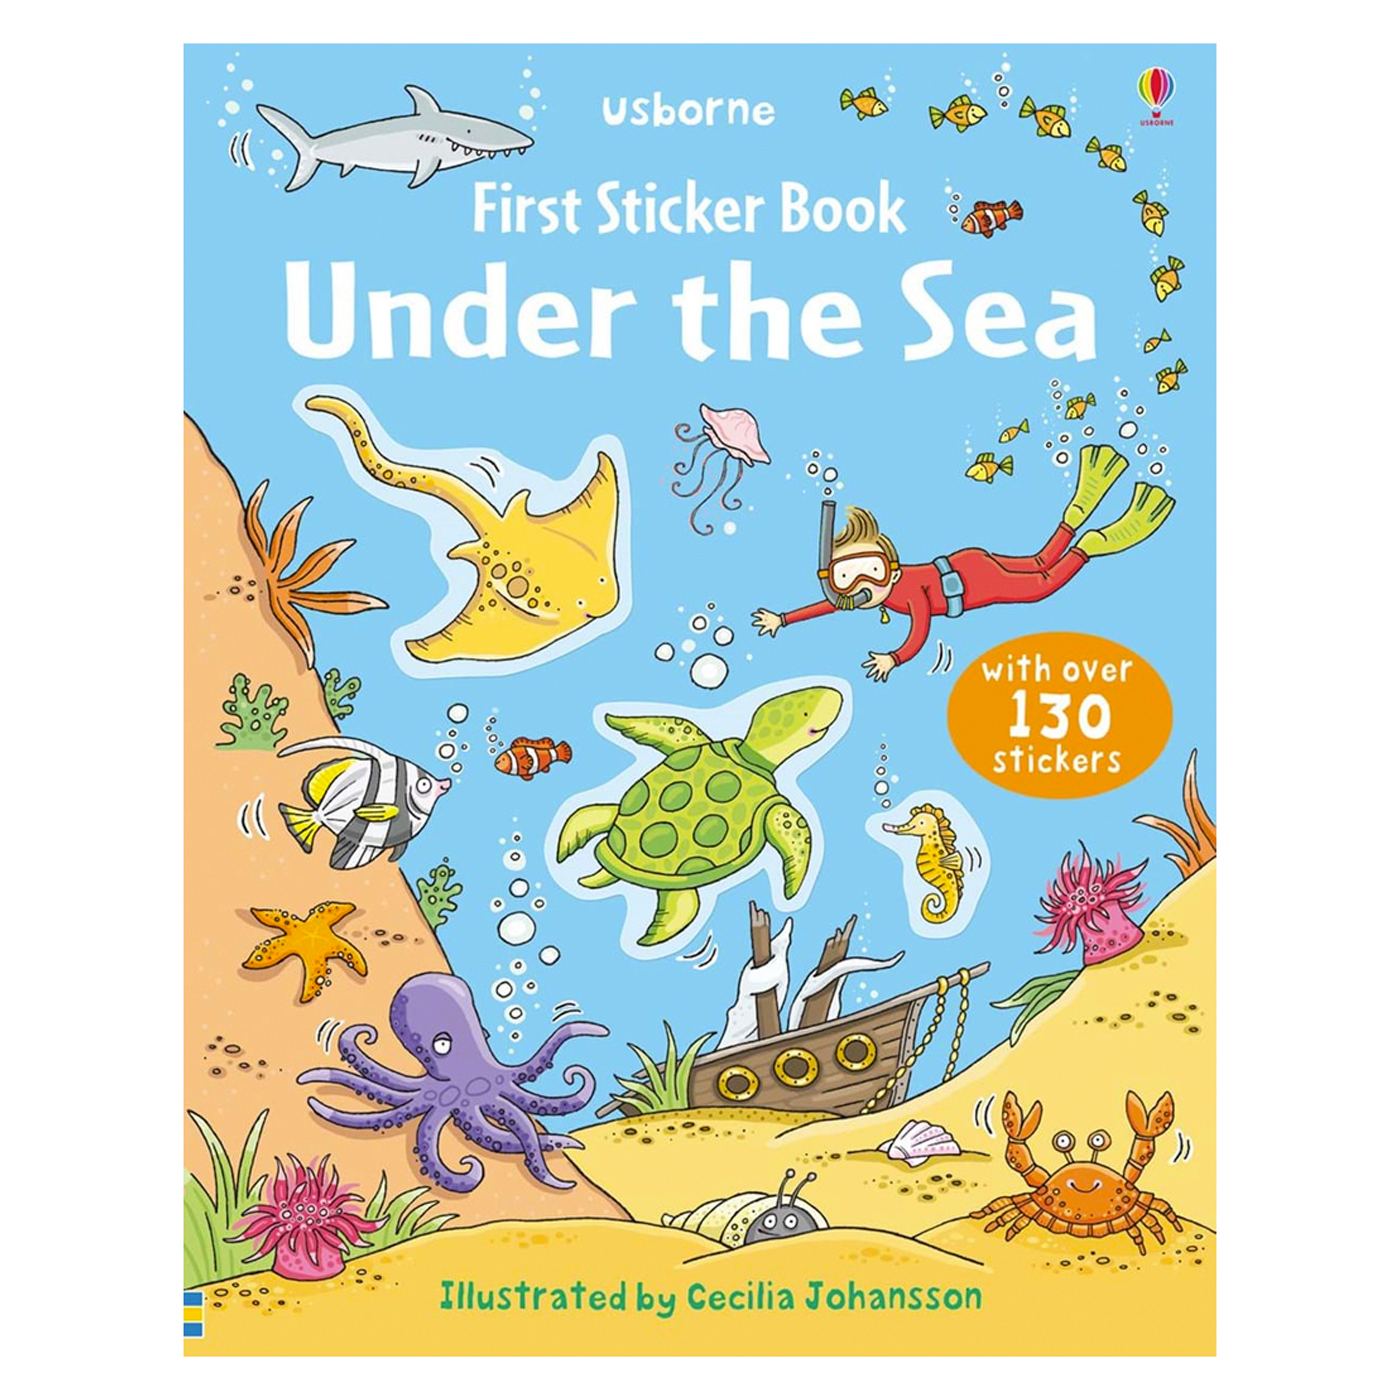  First Sticker Book: Under the Sea